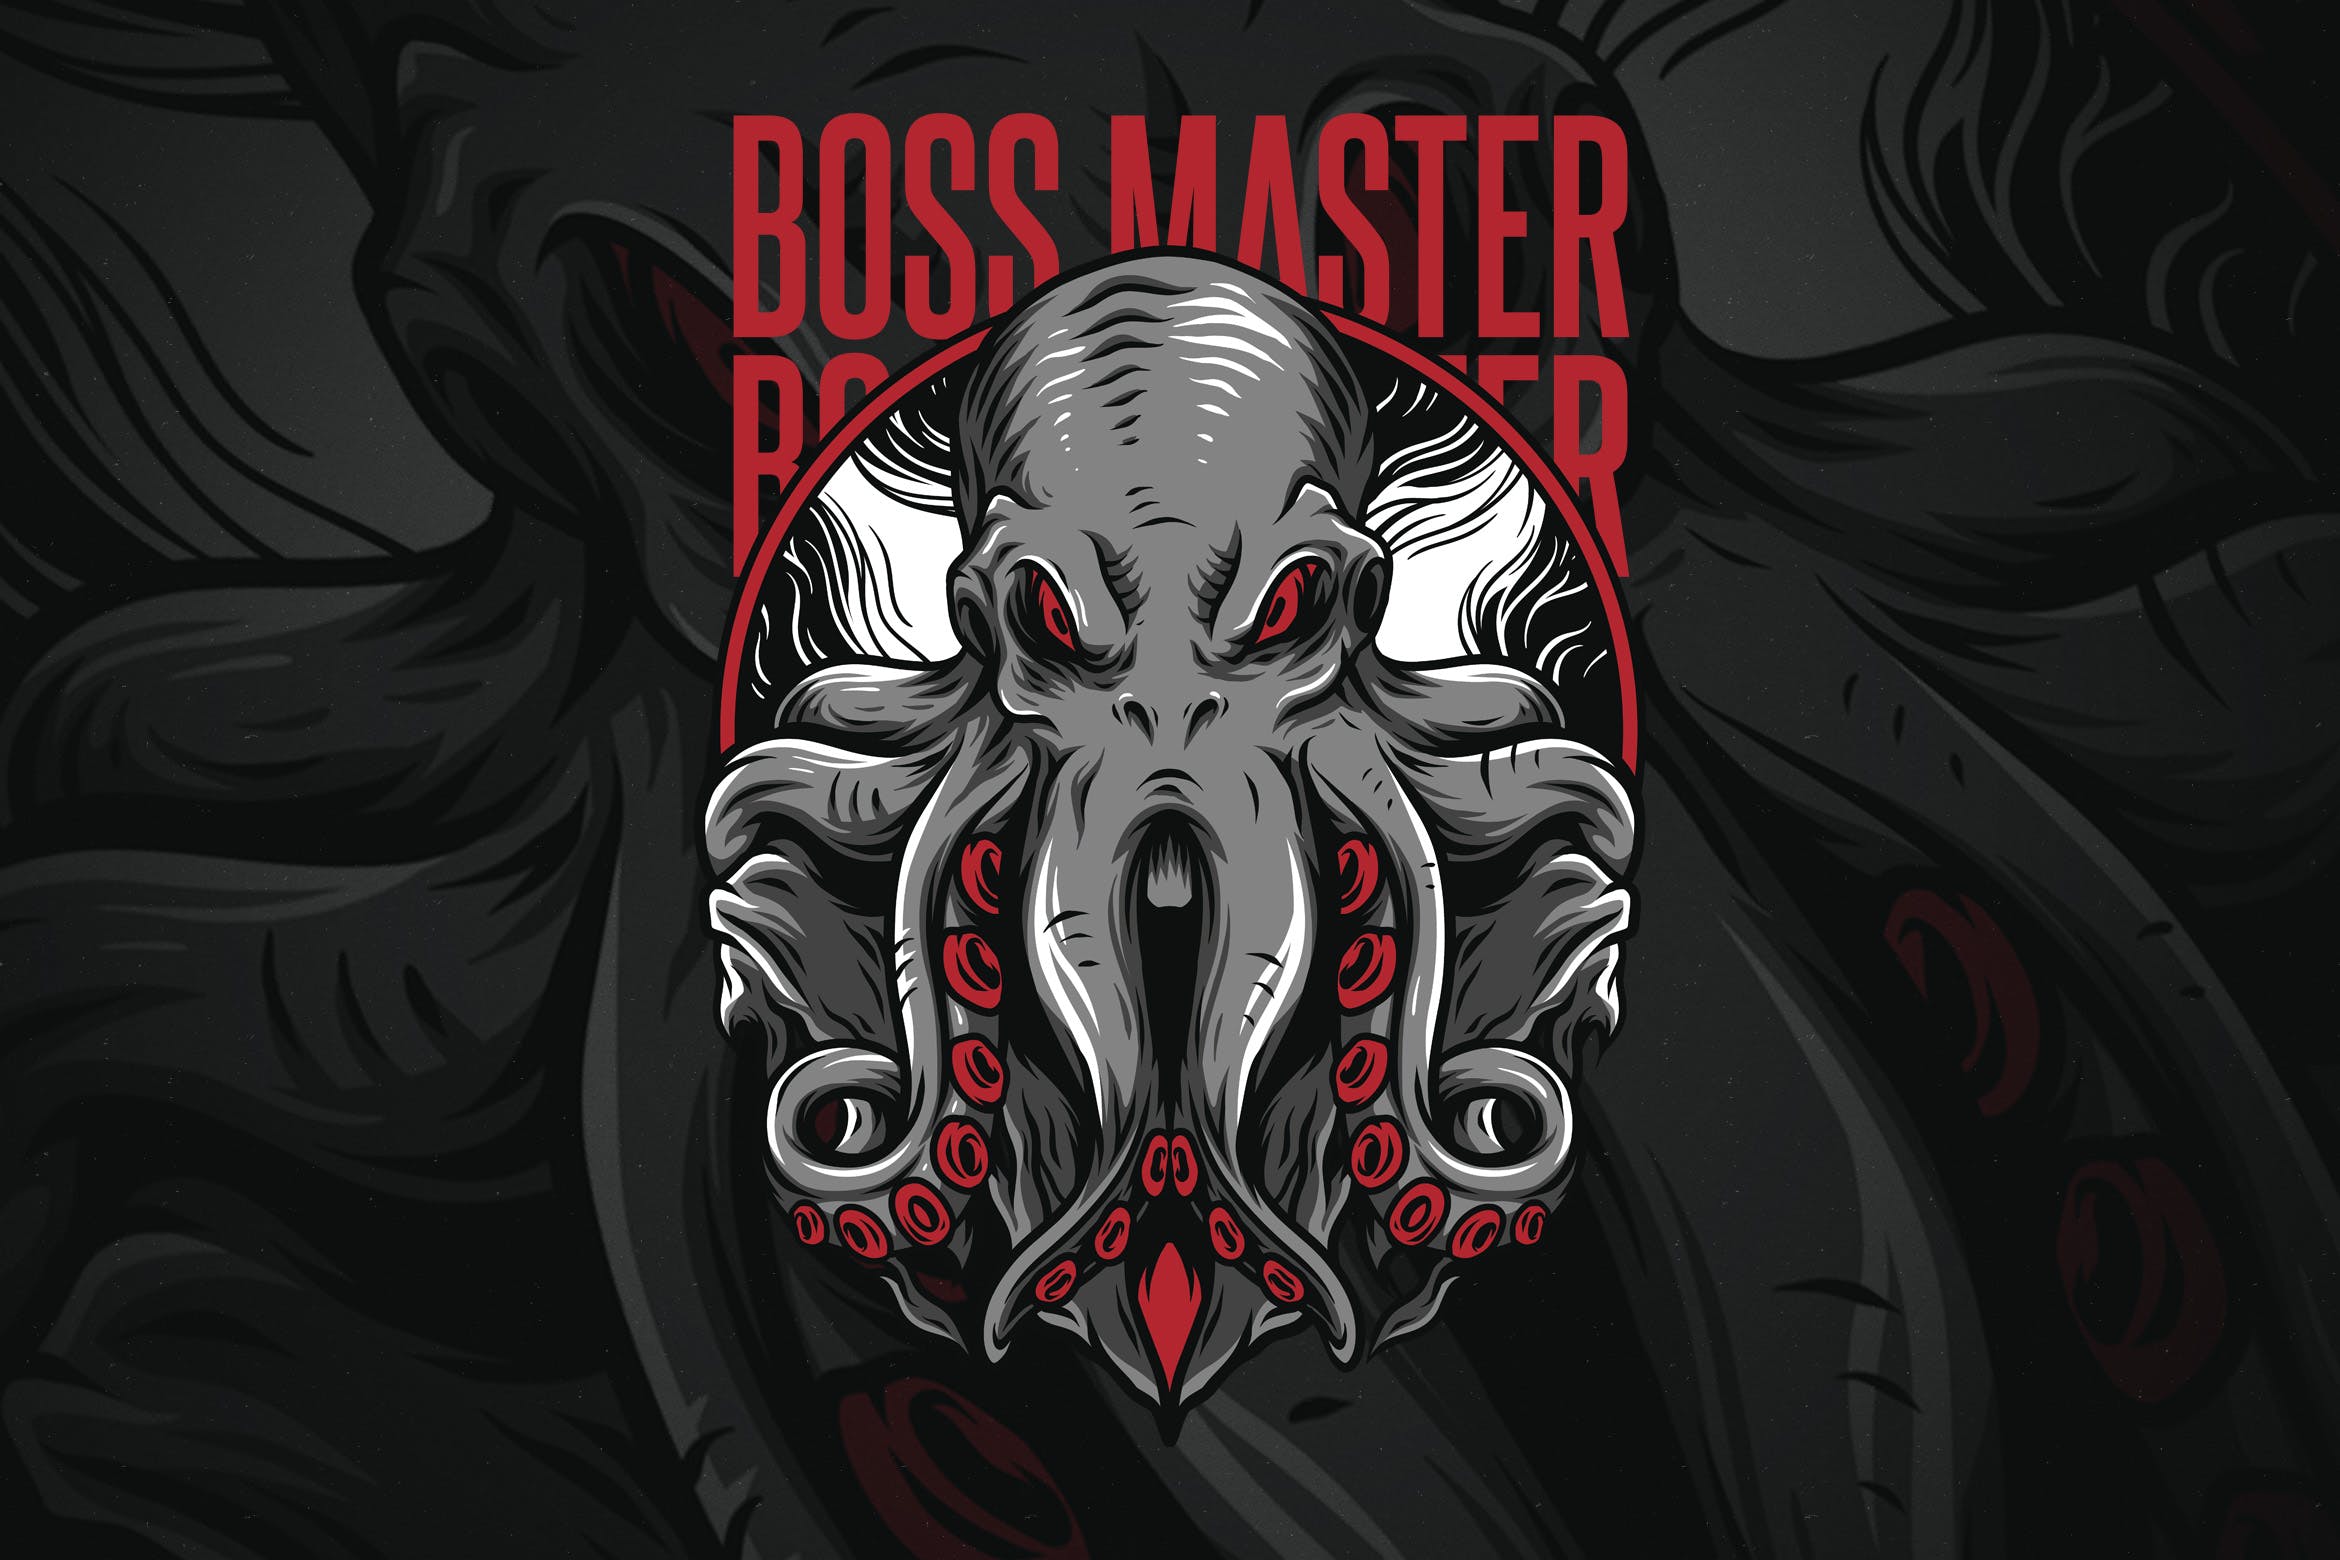 章鱼老大潮牌T恤印花图案蚂蚁素材精选设计素材 Boss Master插图